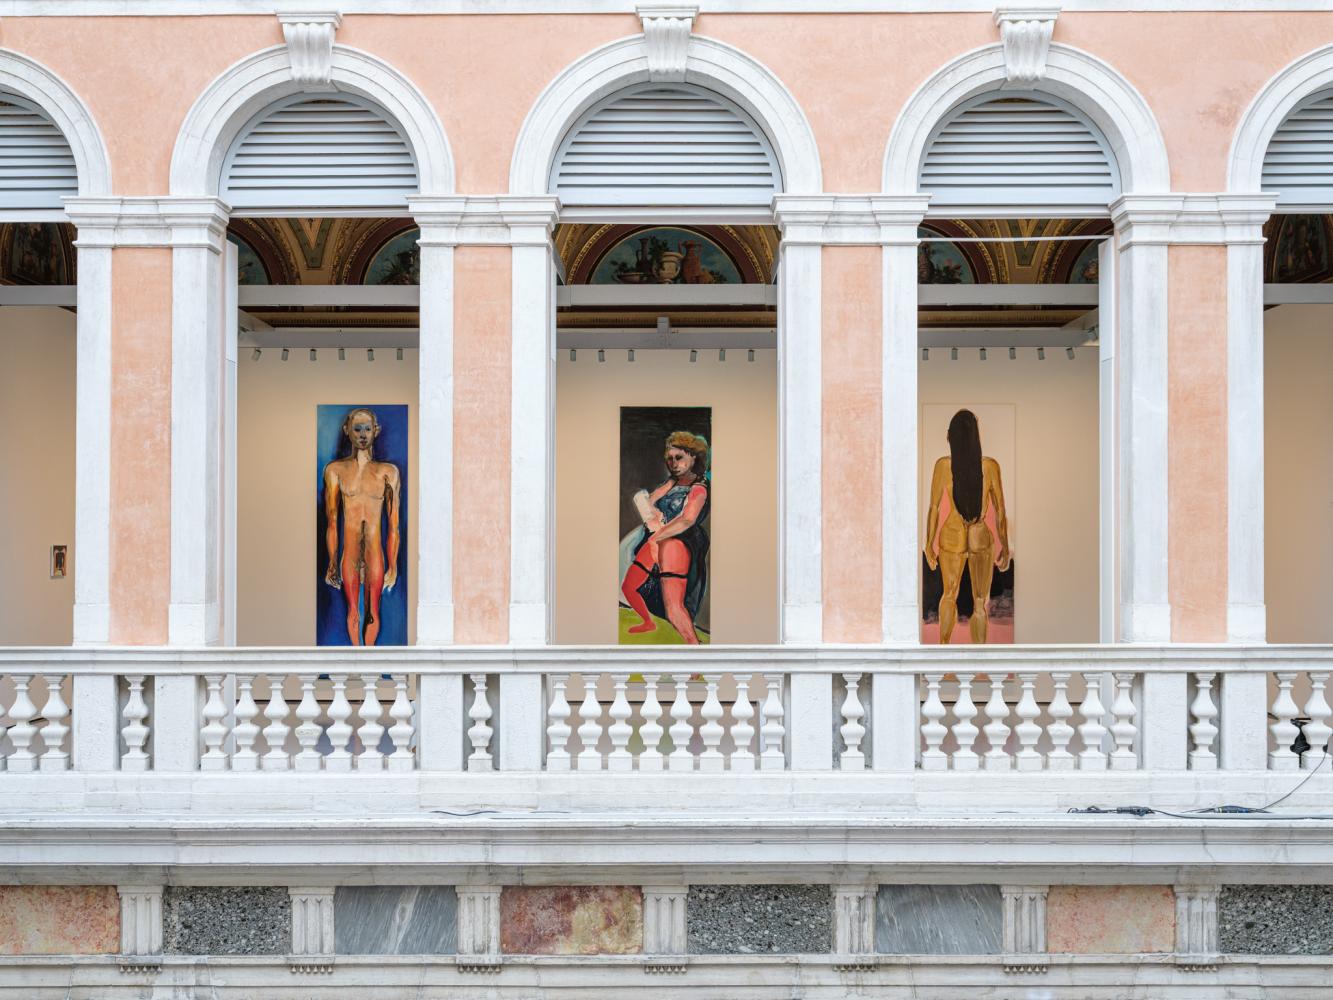 Marlene Dumas (von links nach rechts) "iPhone", 2018; "Alien", 2017; "Spring", 2017; "Amazon", 2016, Installationsansicht "open-end", Palazzo Grassi, 2022